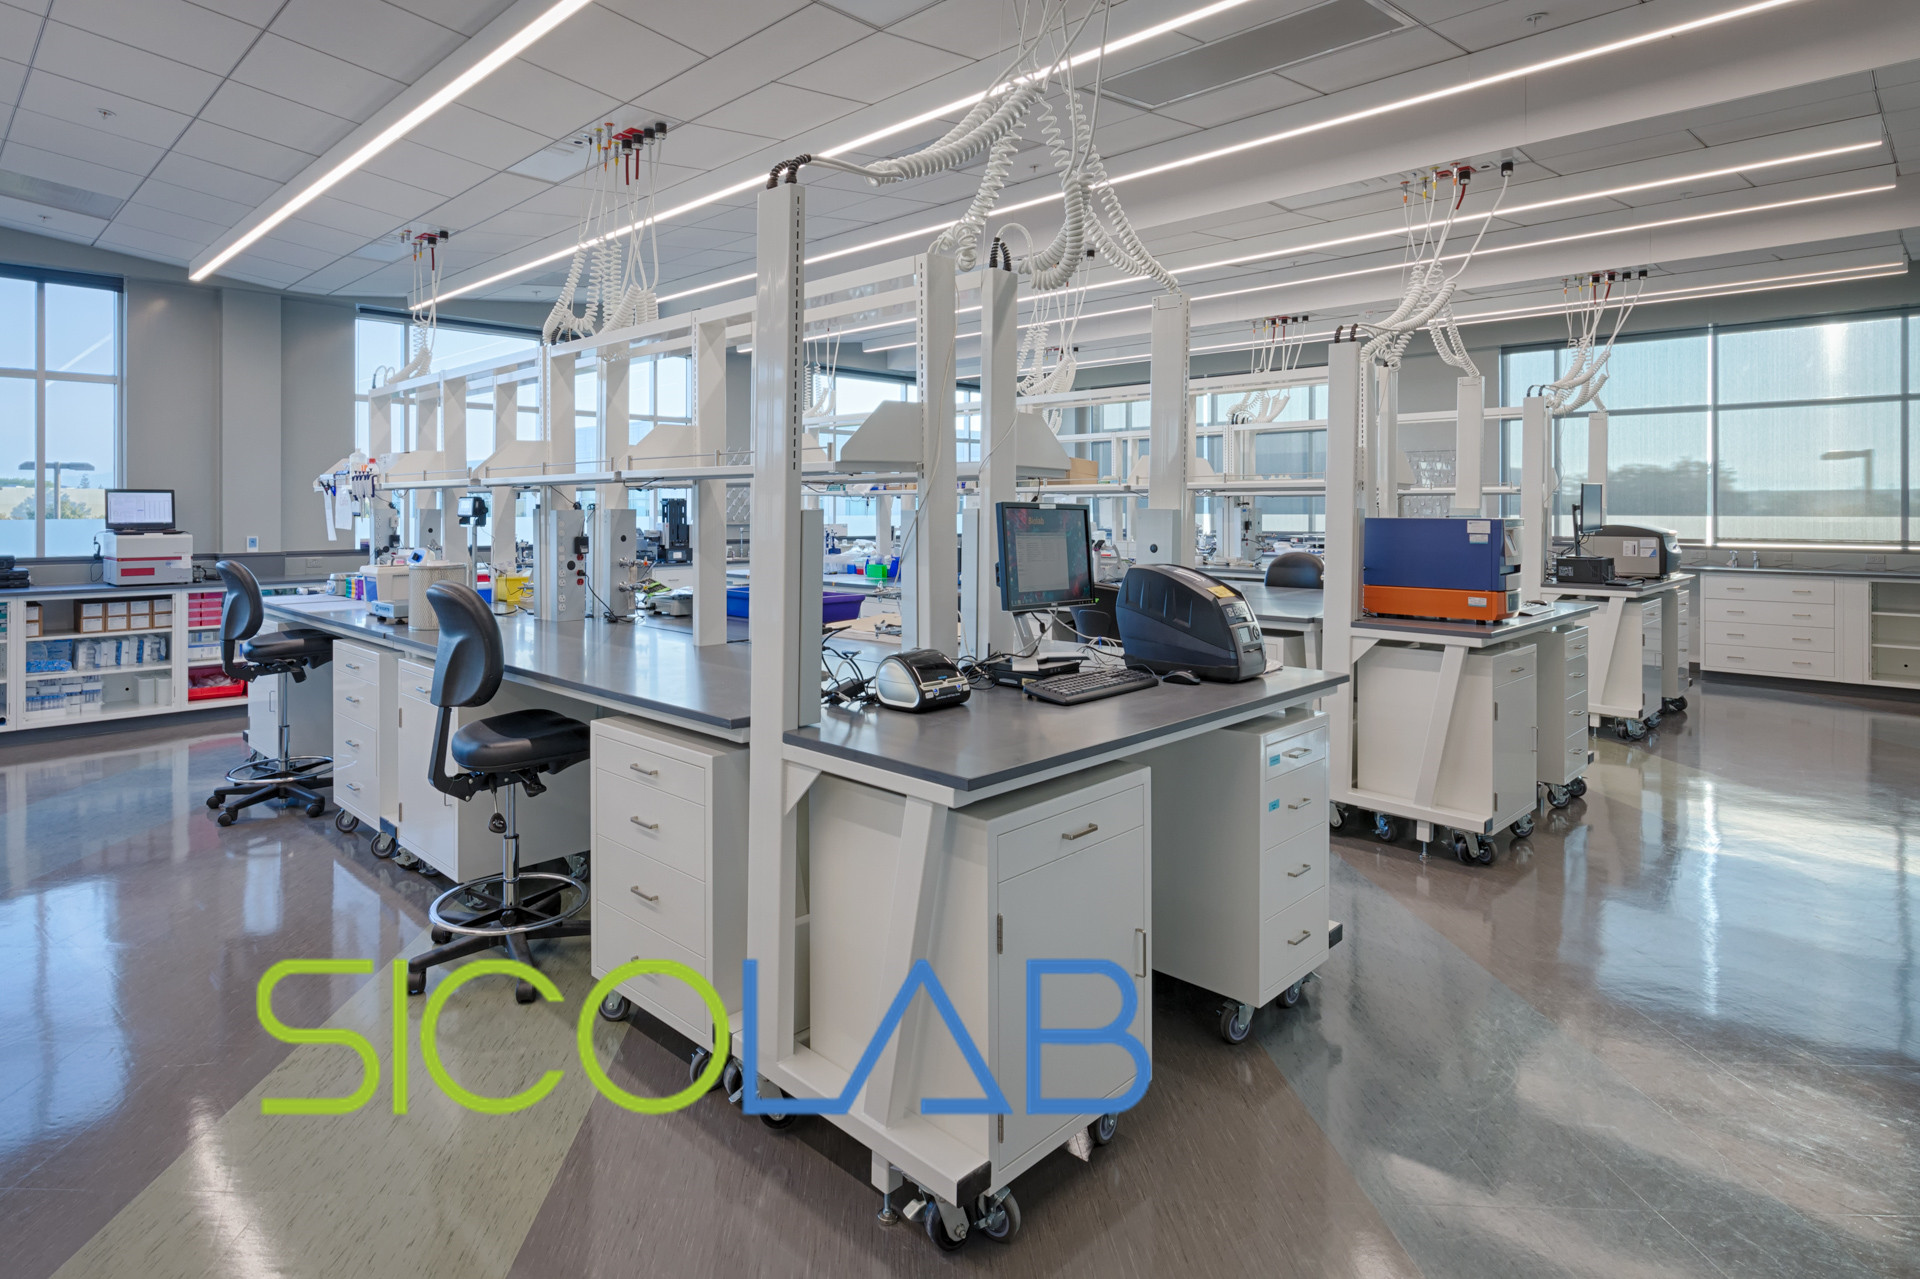 高校理化生实验室建设中需要考虑的安全因素-SICOLAB